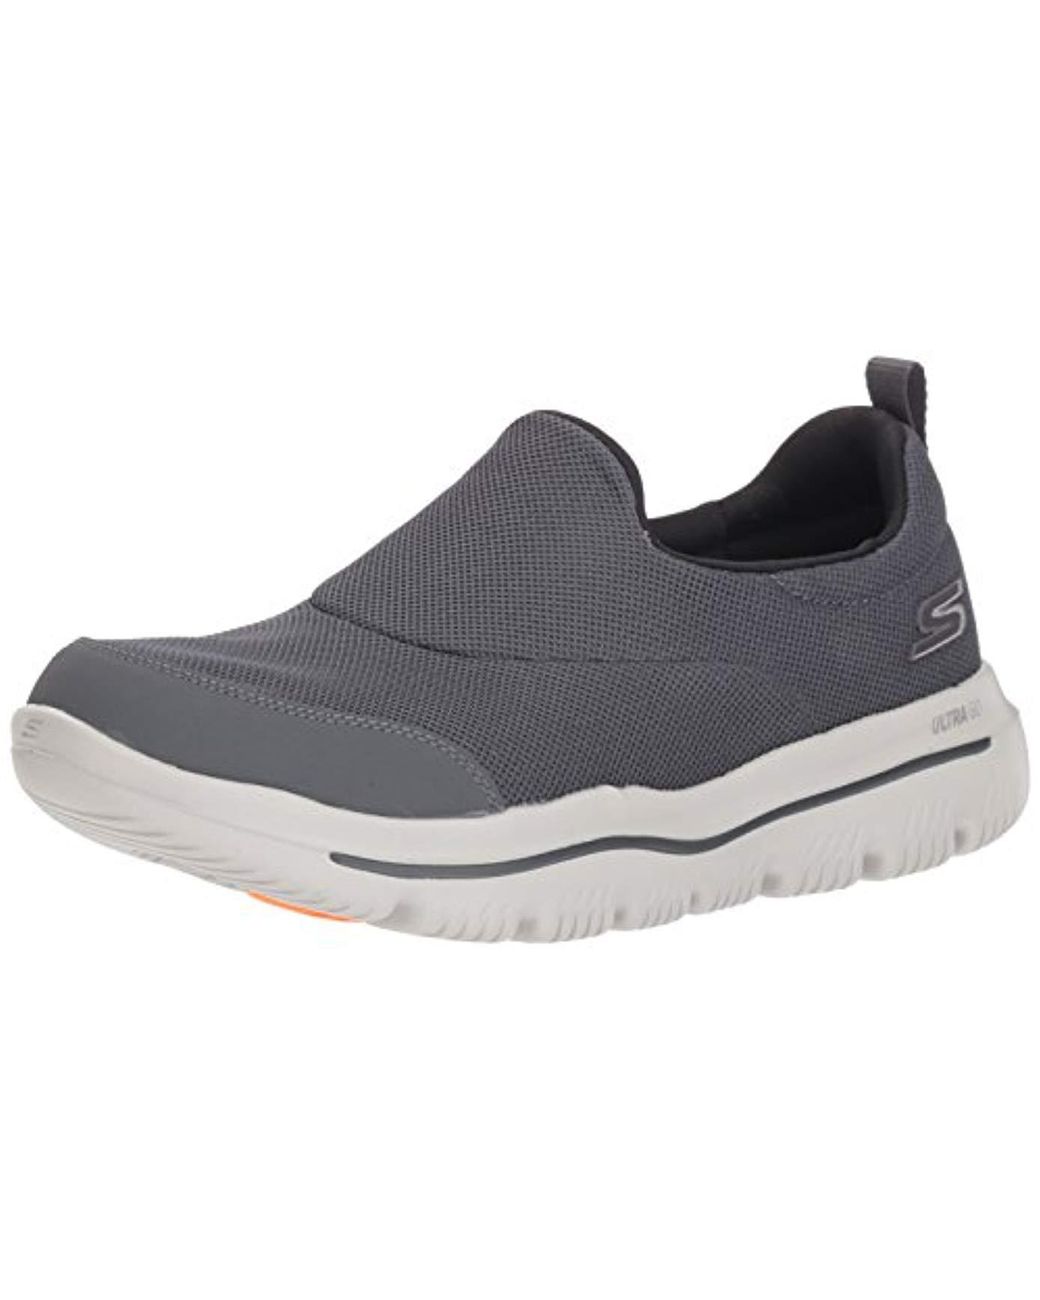 Lyst - Skechers Go Walk Evolution Ultra 54730 Sneaker in Gray for Men